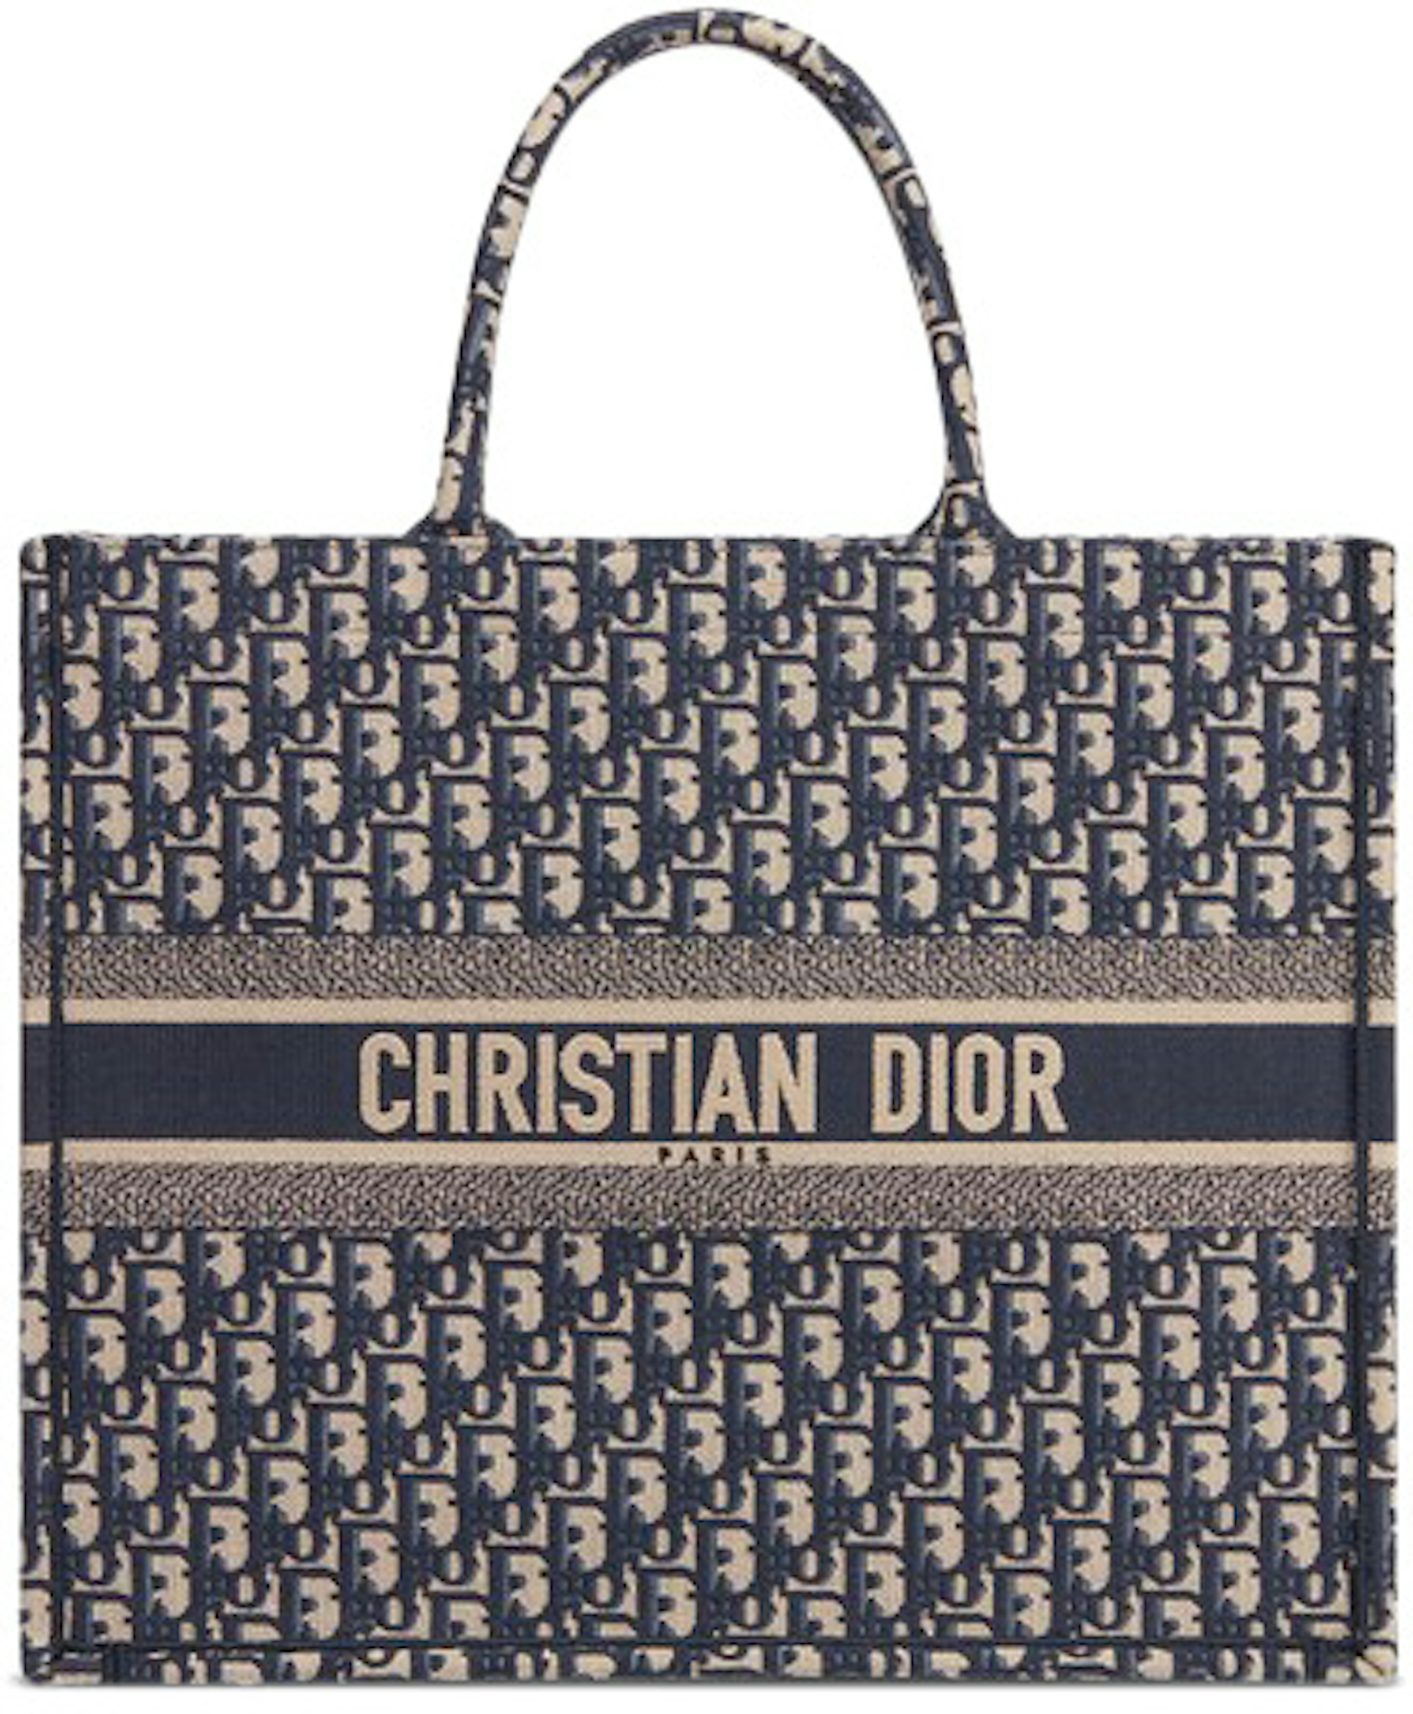 christian dior beach bag